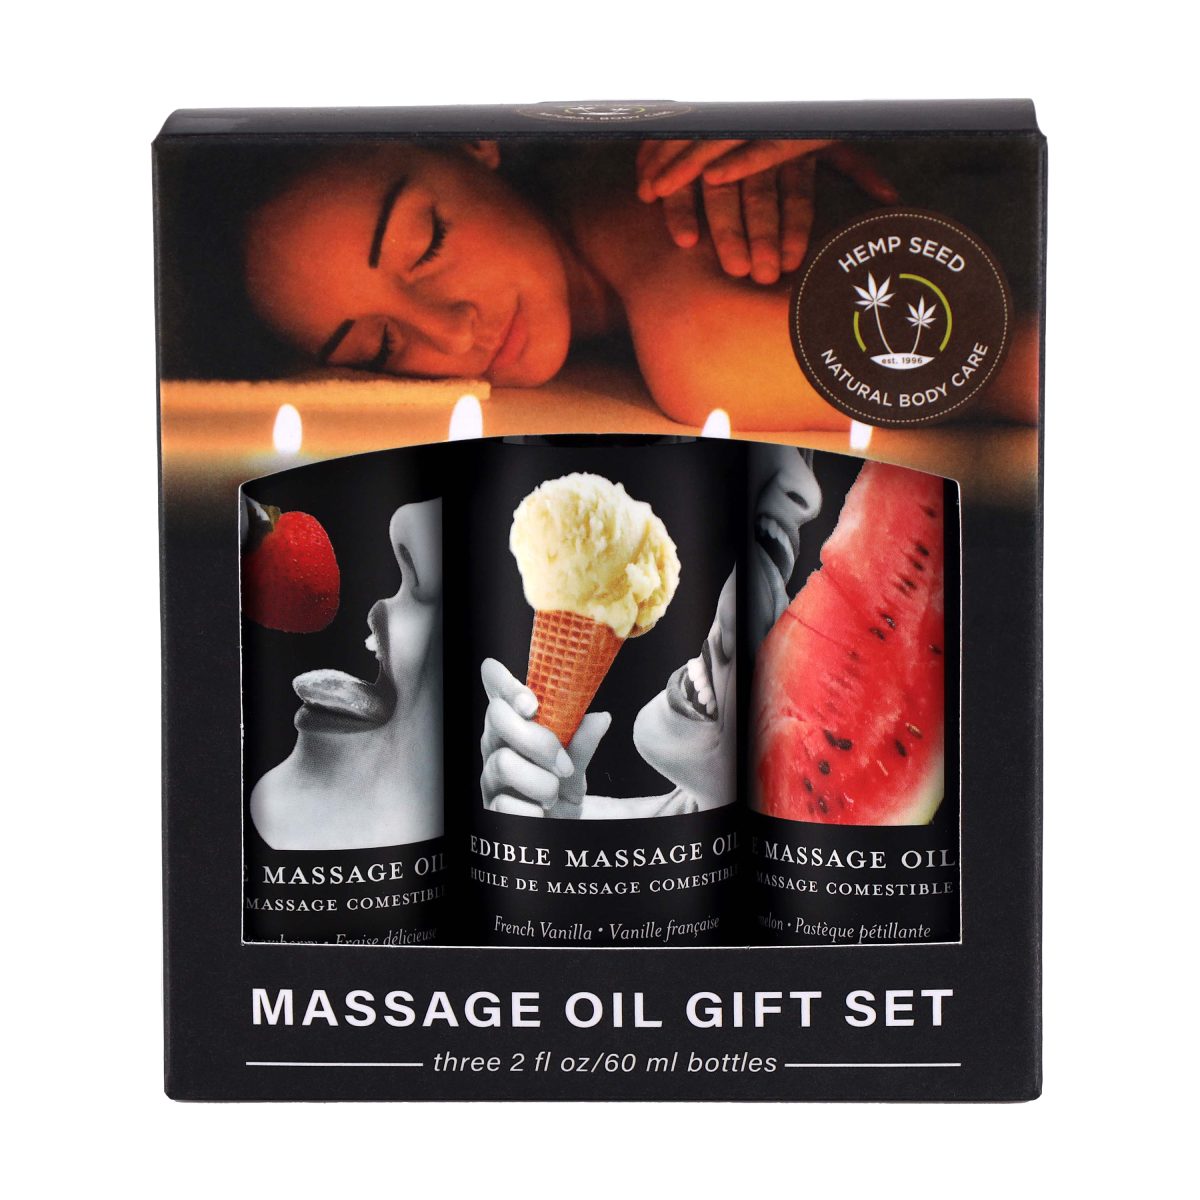 "Découvrez l'extase sensorielle avec le Coffret Cadeau d'Huile de Massage Comestible. Trois saveurs irrésistibles pour éveiller vos sens à chaque massage."